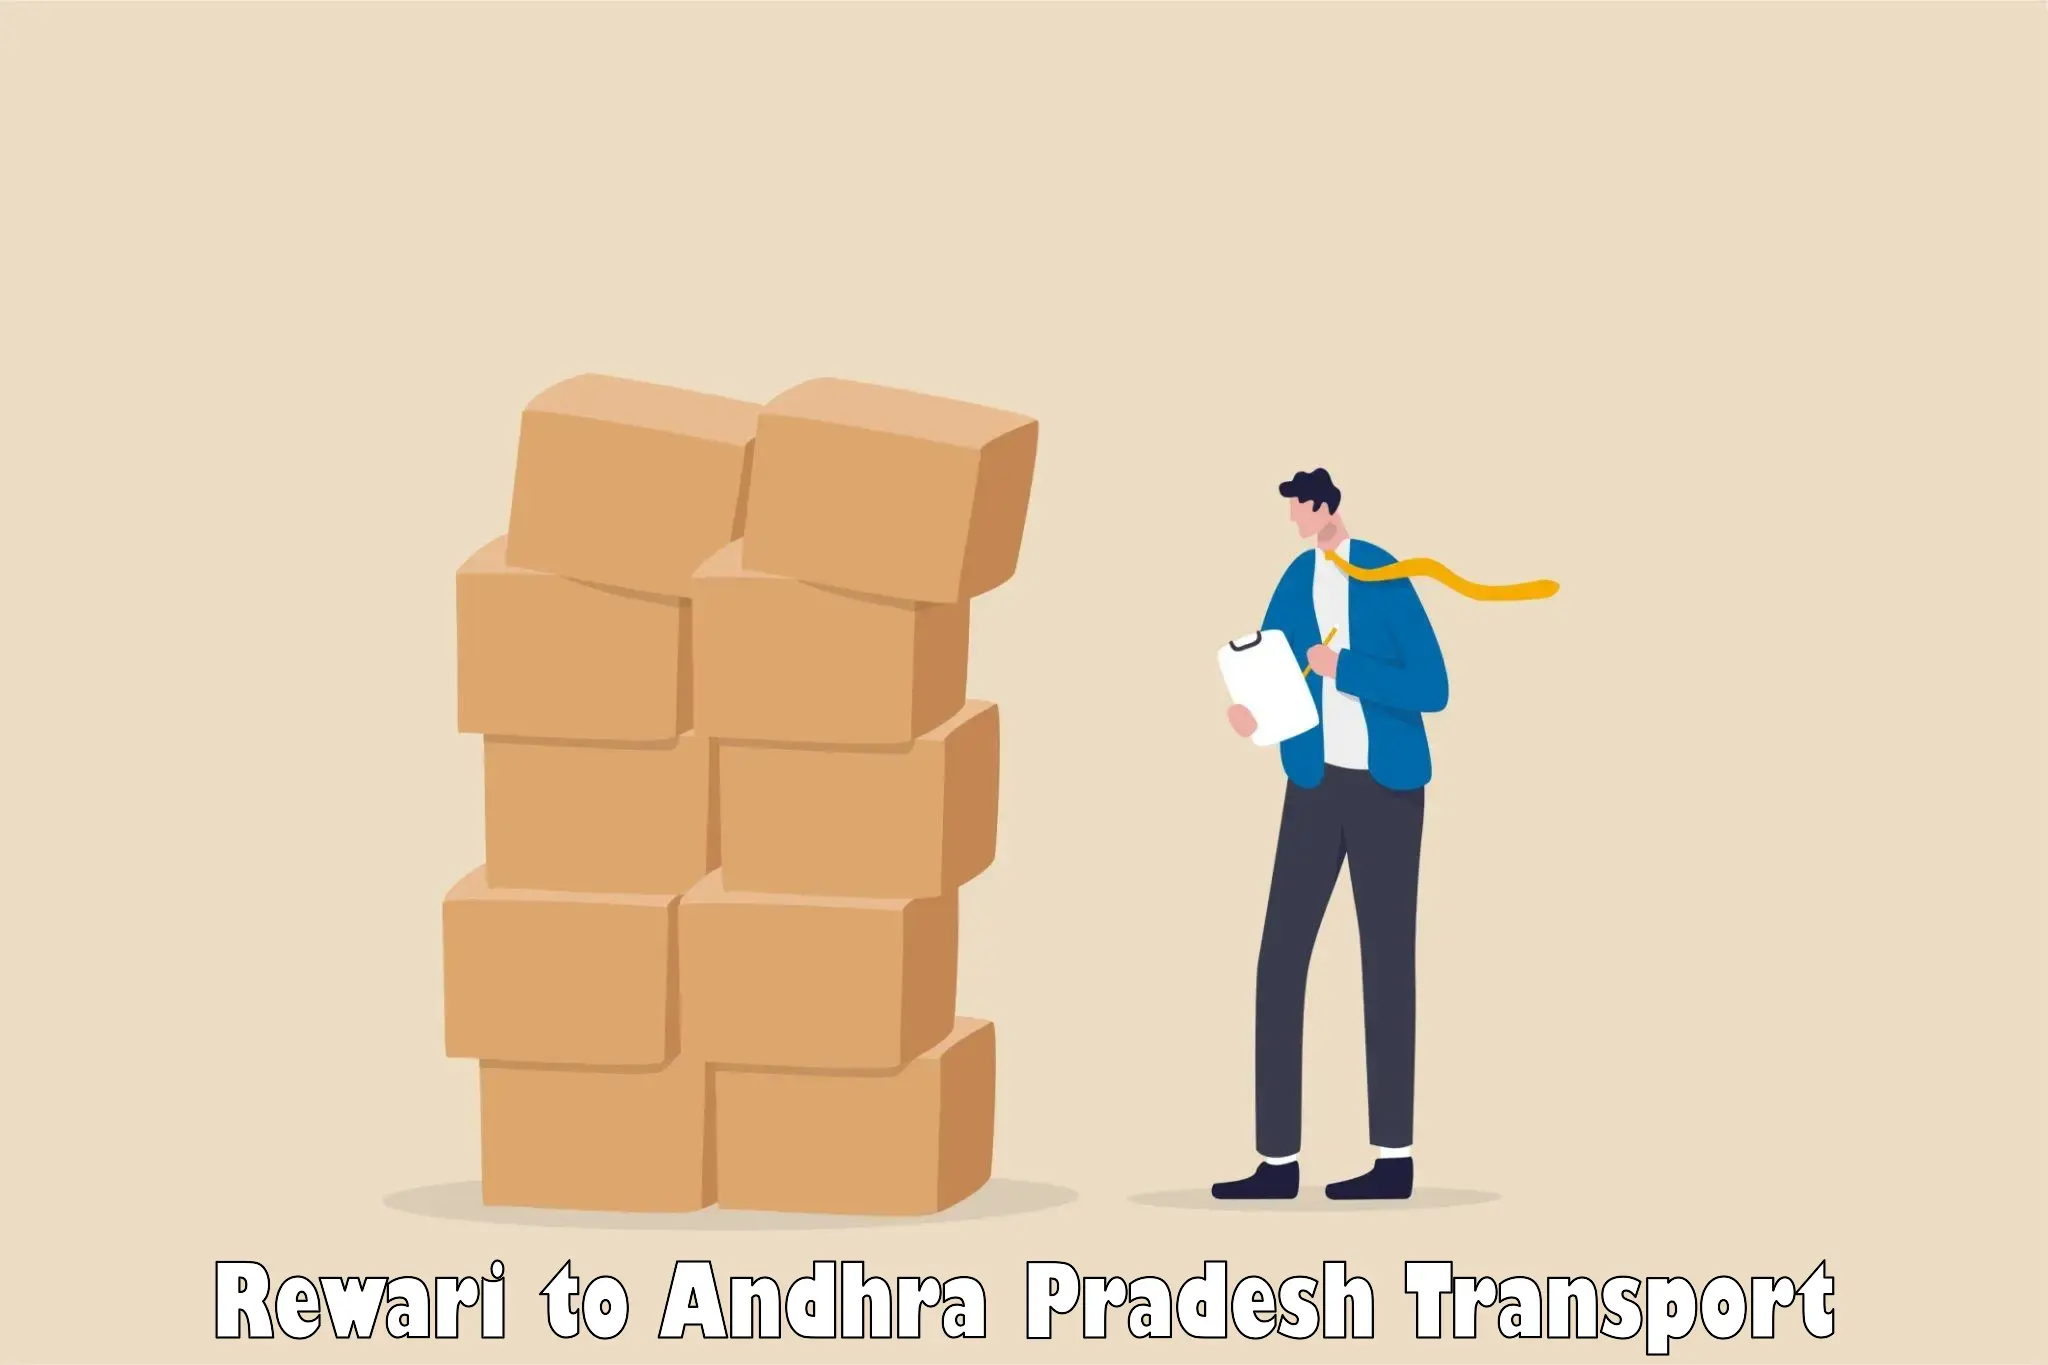 Delivery service Rewari to Andhra Pradesh